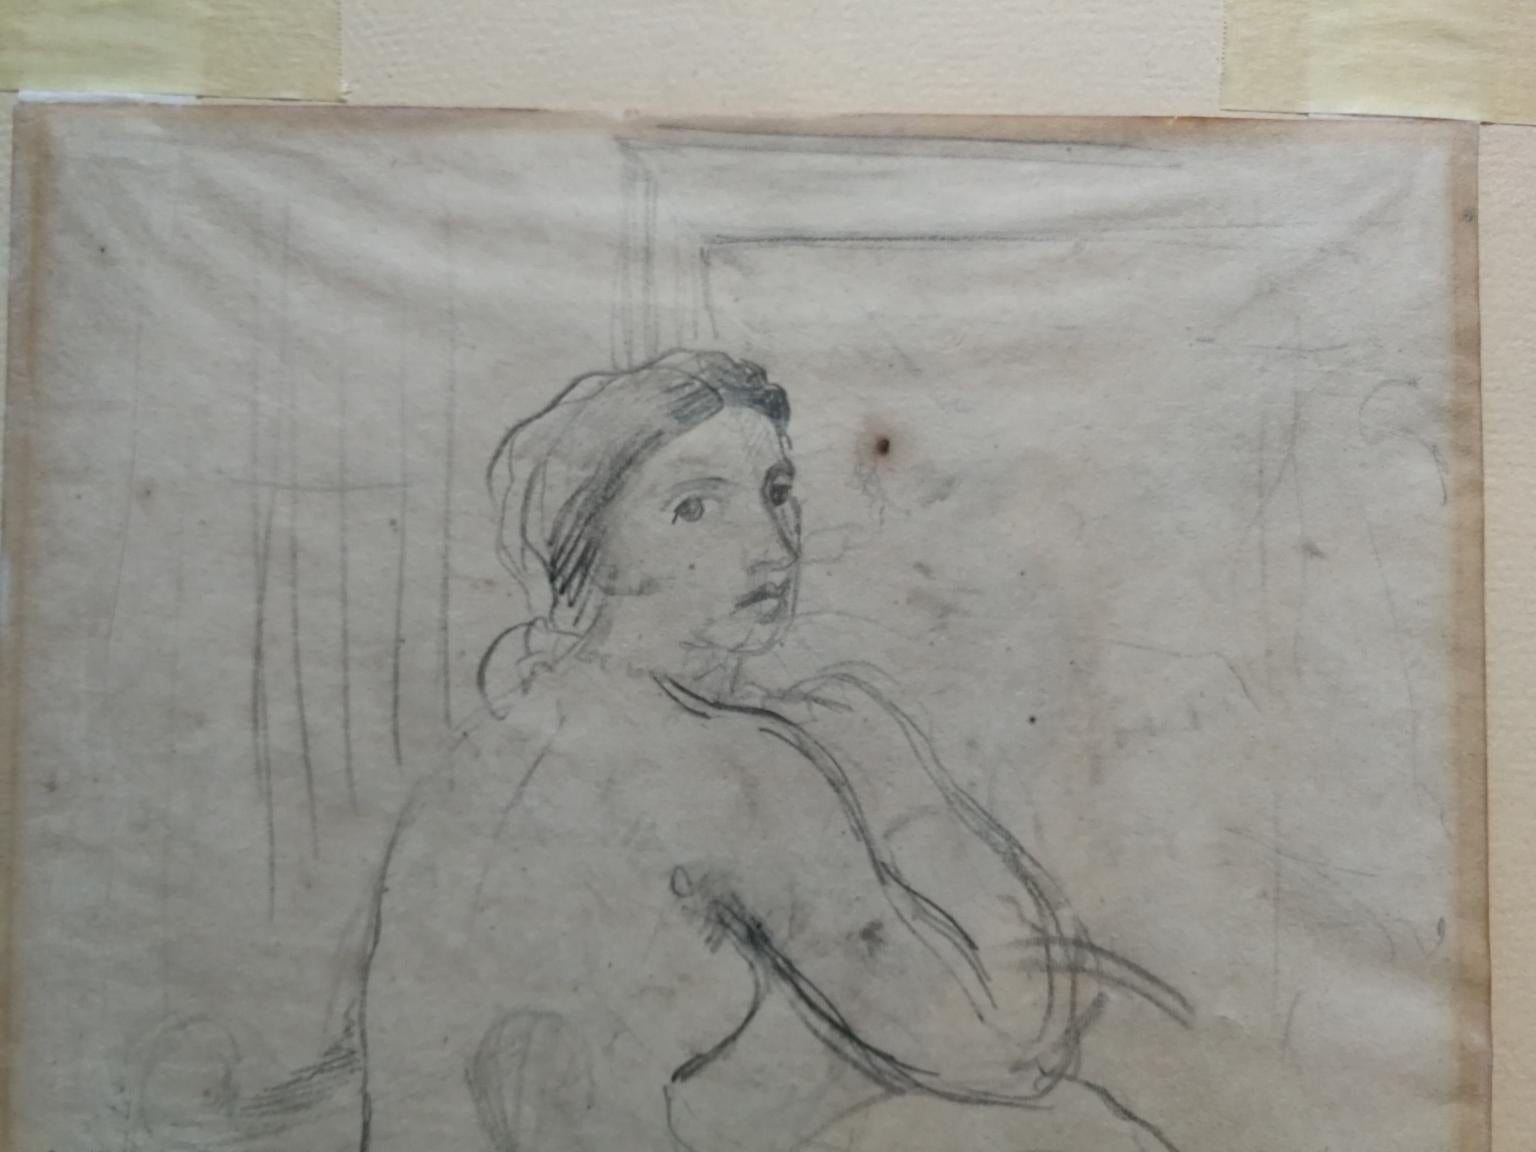 Disegno fronte retro figurativo toscano nudo femminile del XX secolo - Other Art Style Art by Ugo Capocchini